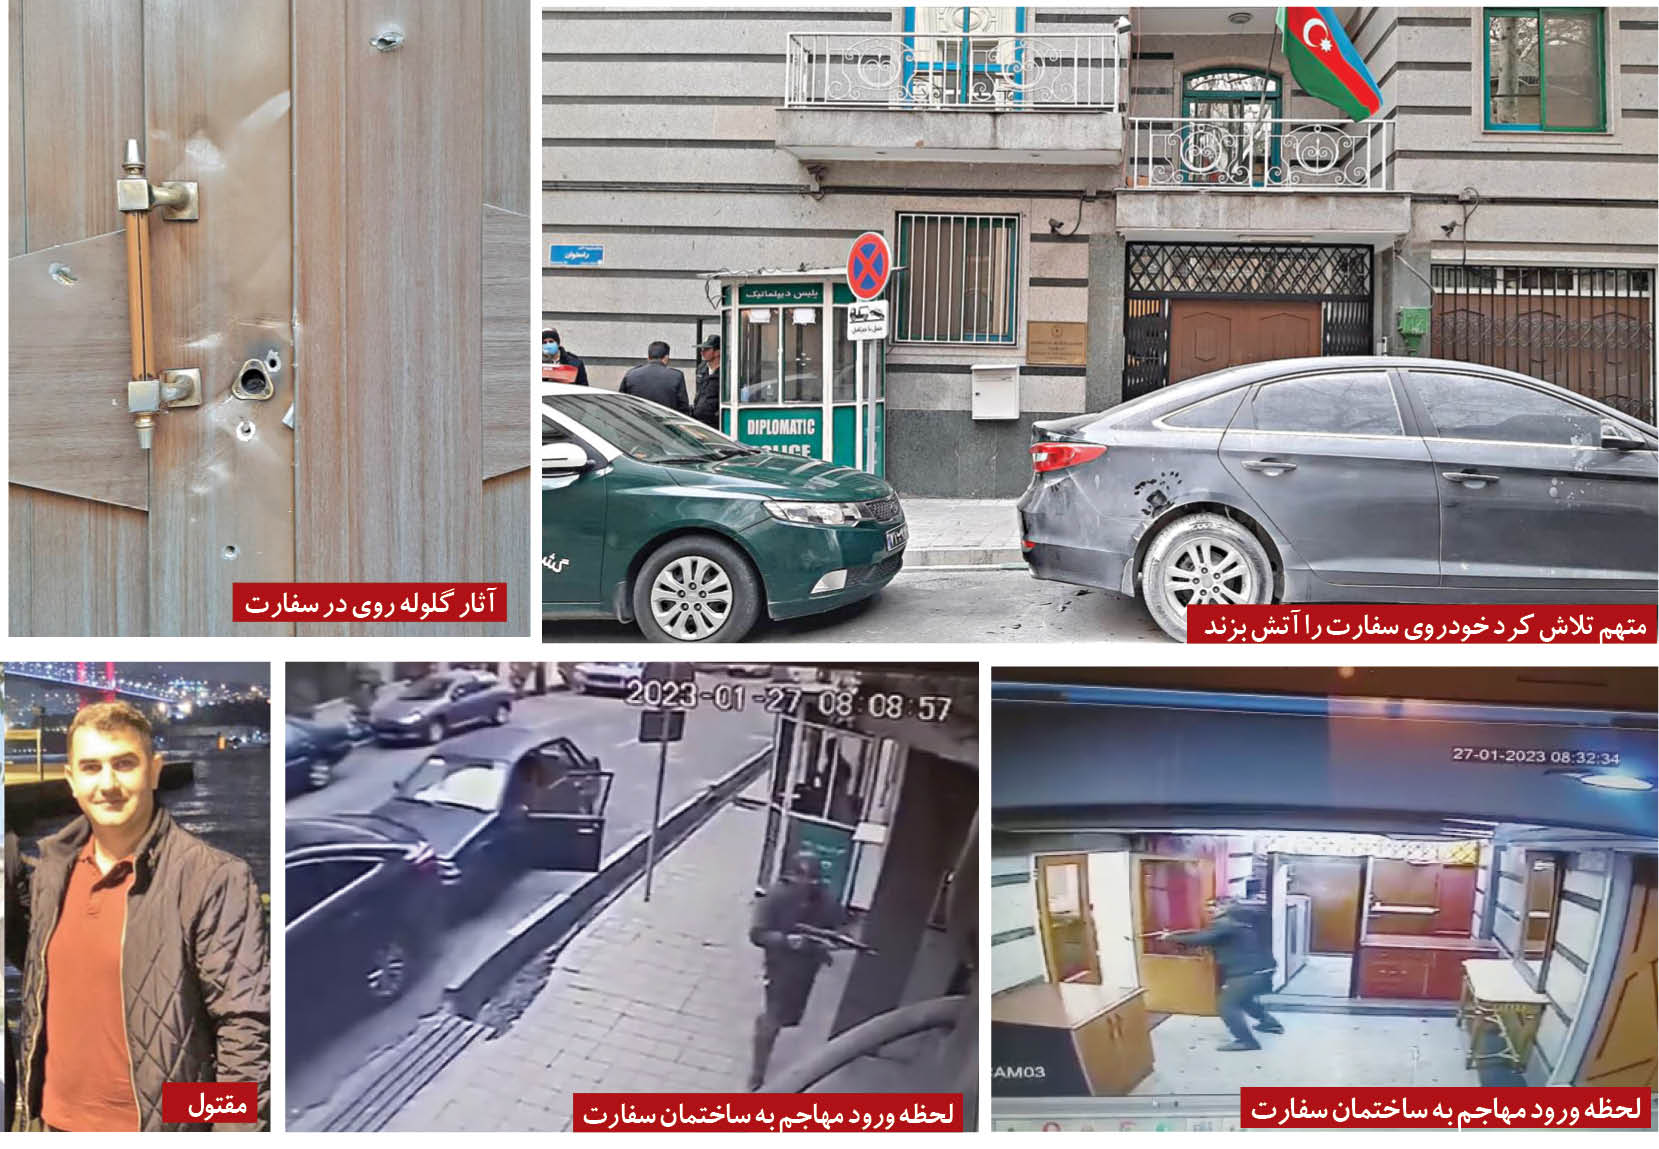 حمله مرد مسلح به سفارت جمهوری آذربایجان در خیابان پاسداران یک کشته و 2 مجروح به جا گذ اشت